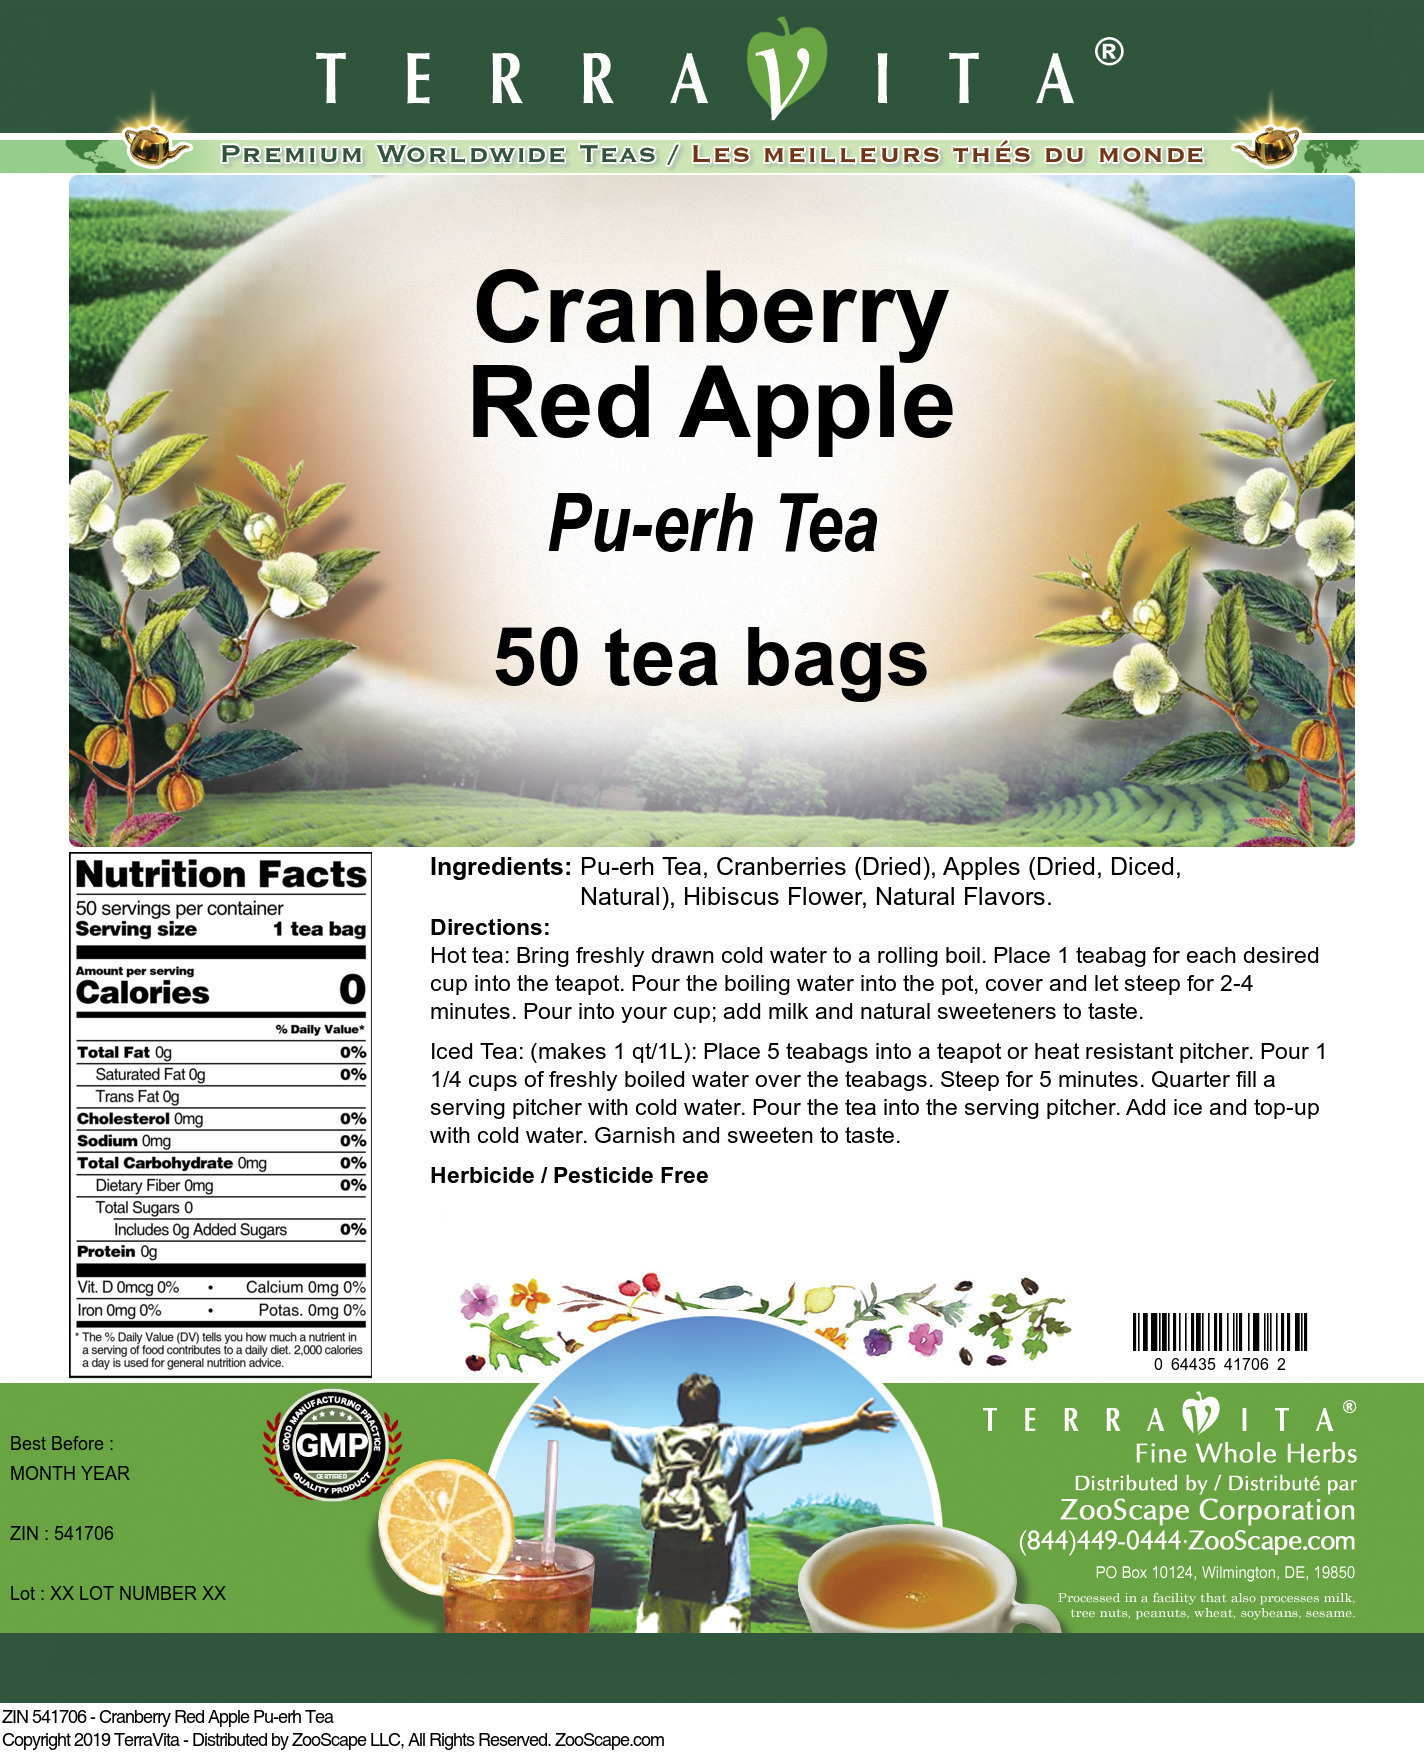 Cranberry Red Apple Pu-erh Tea - Label